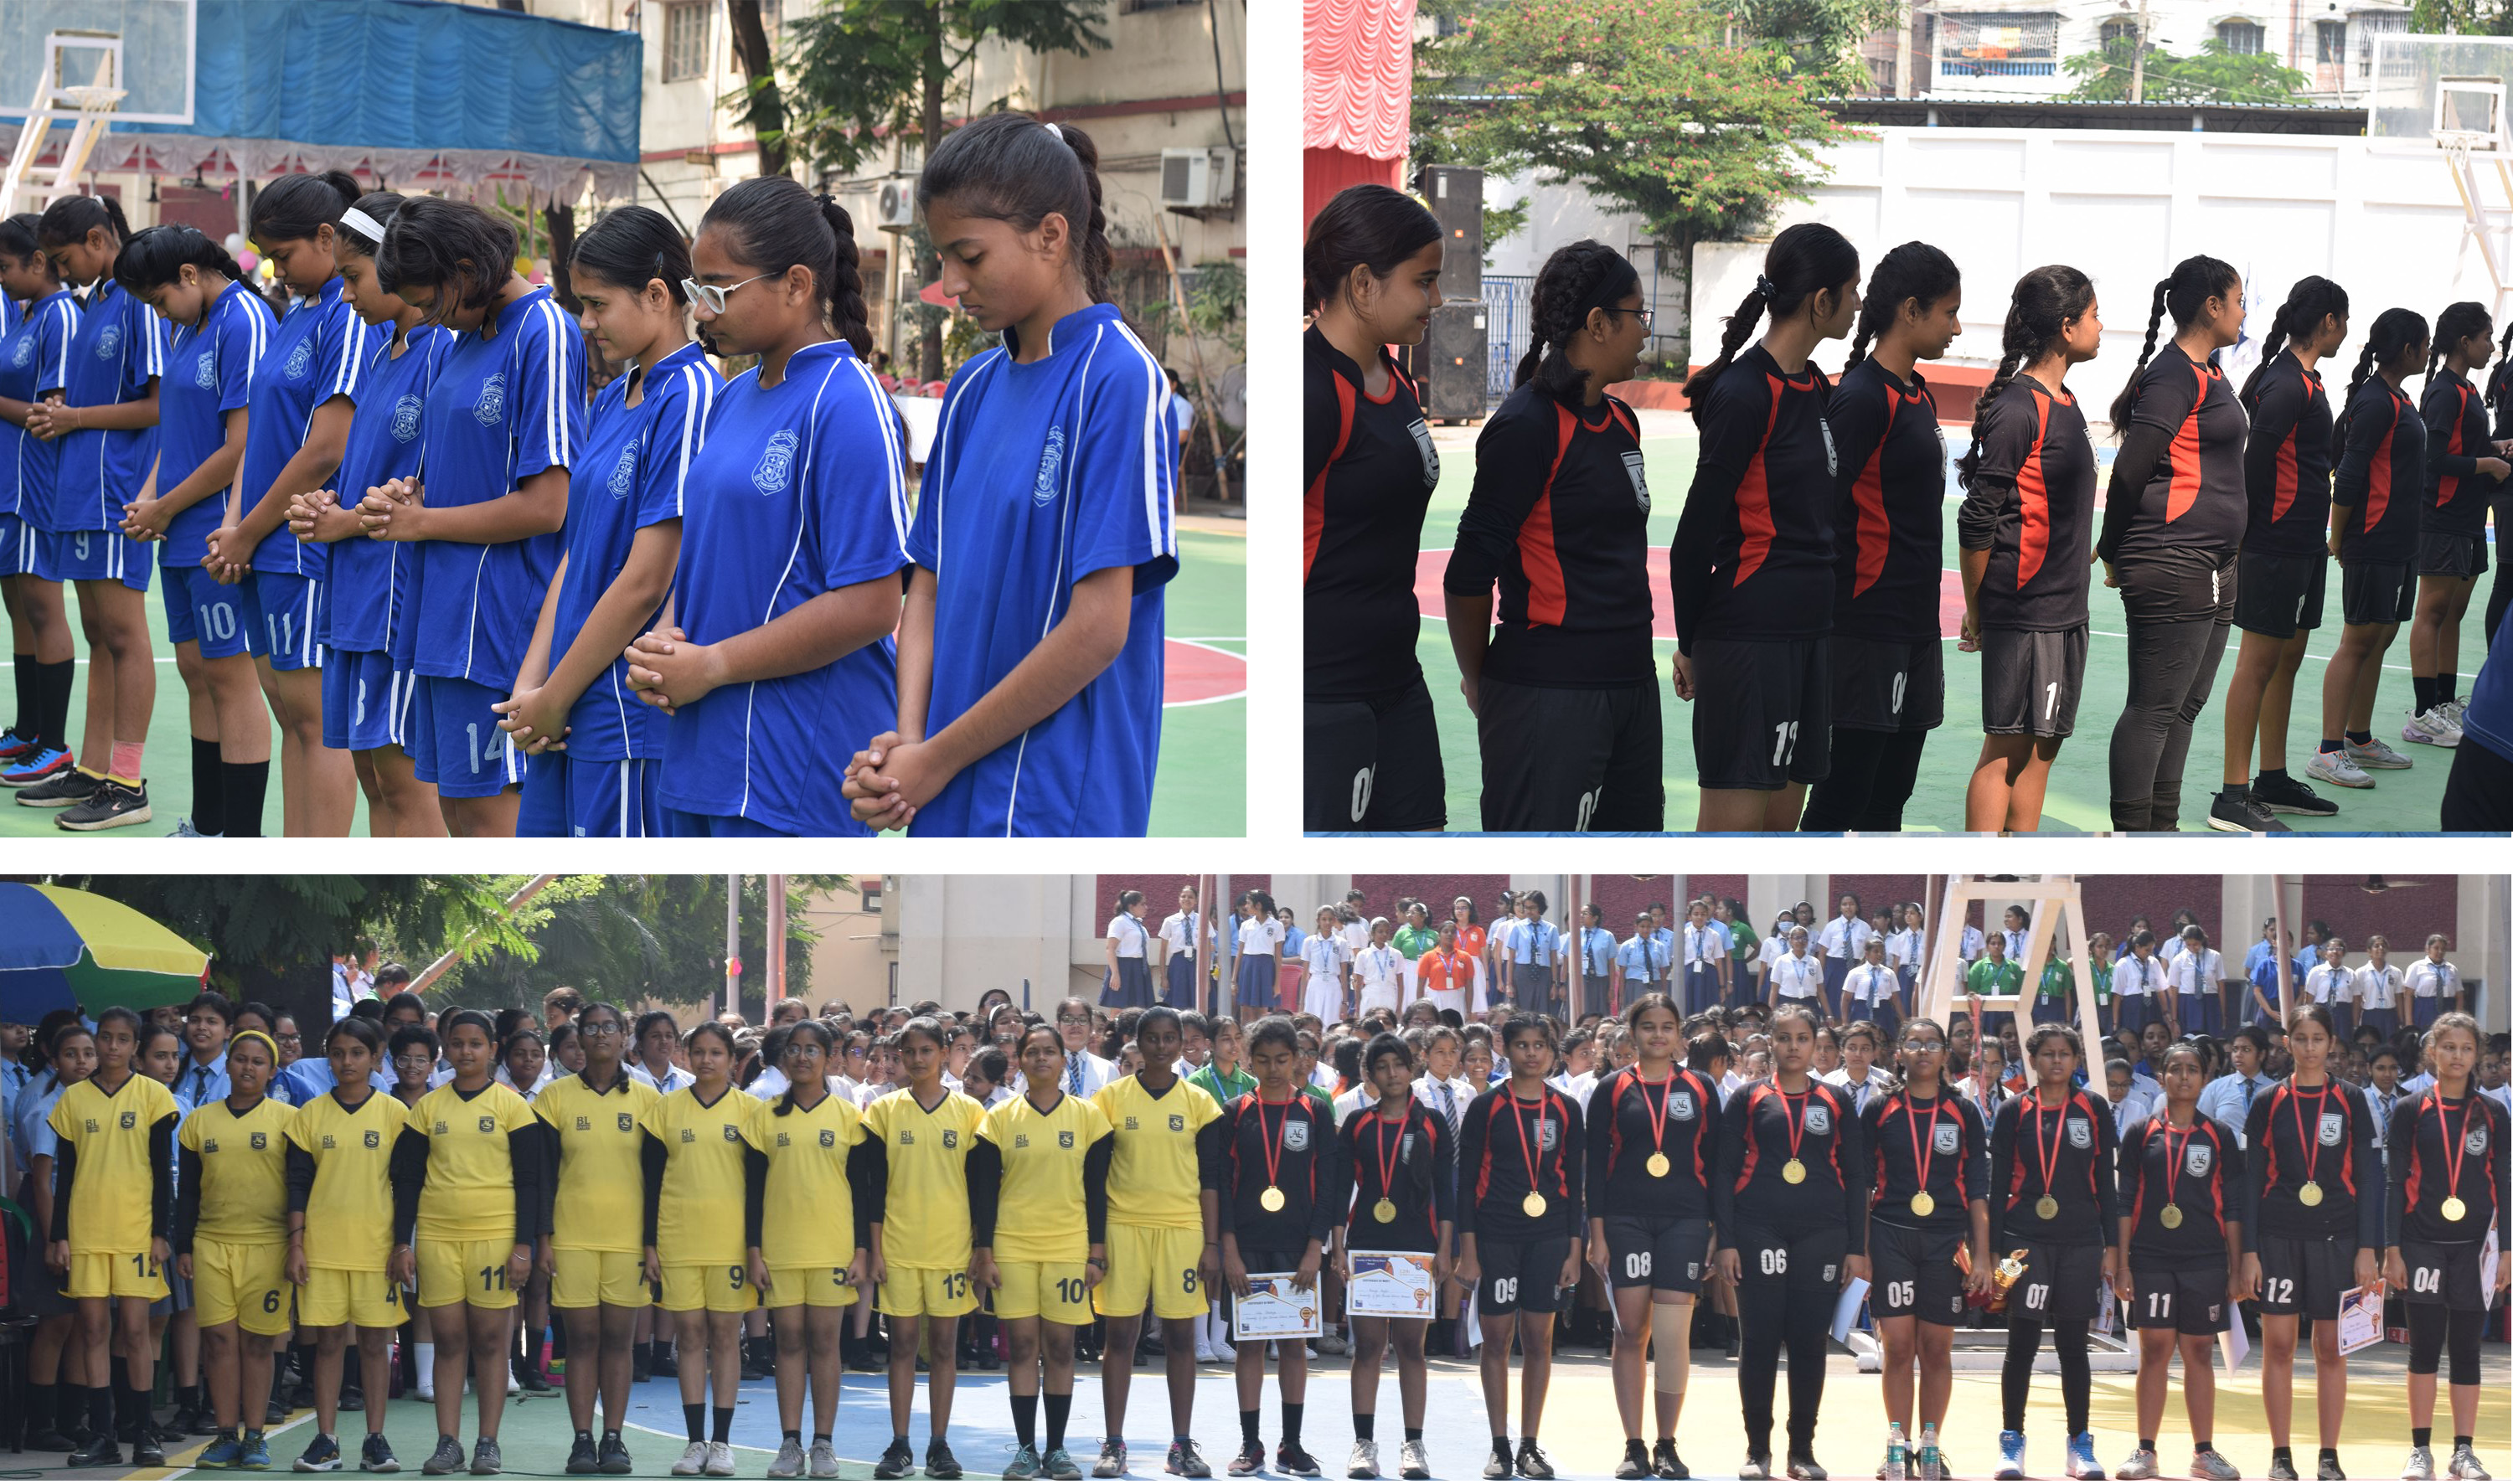 20221021~Inter School Girls' Basketball Tournament Thumbnails